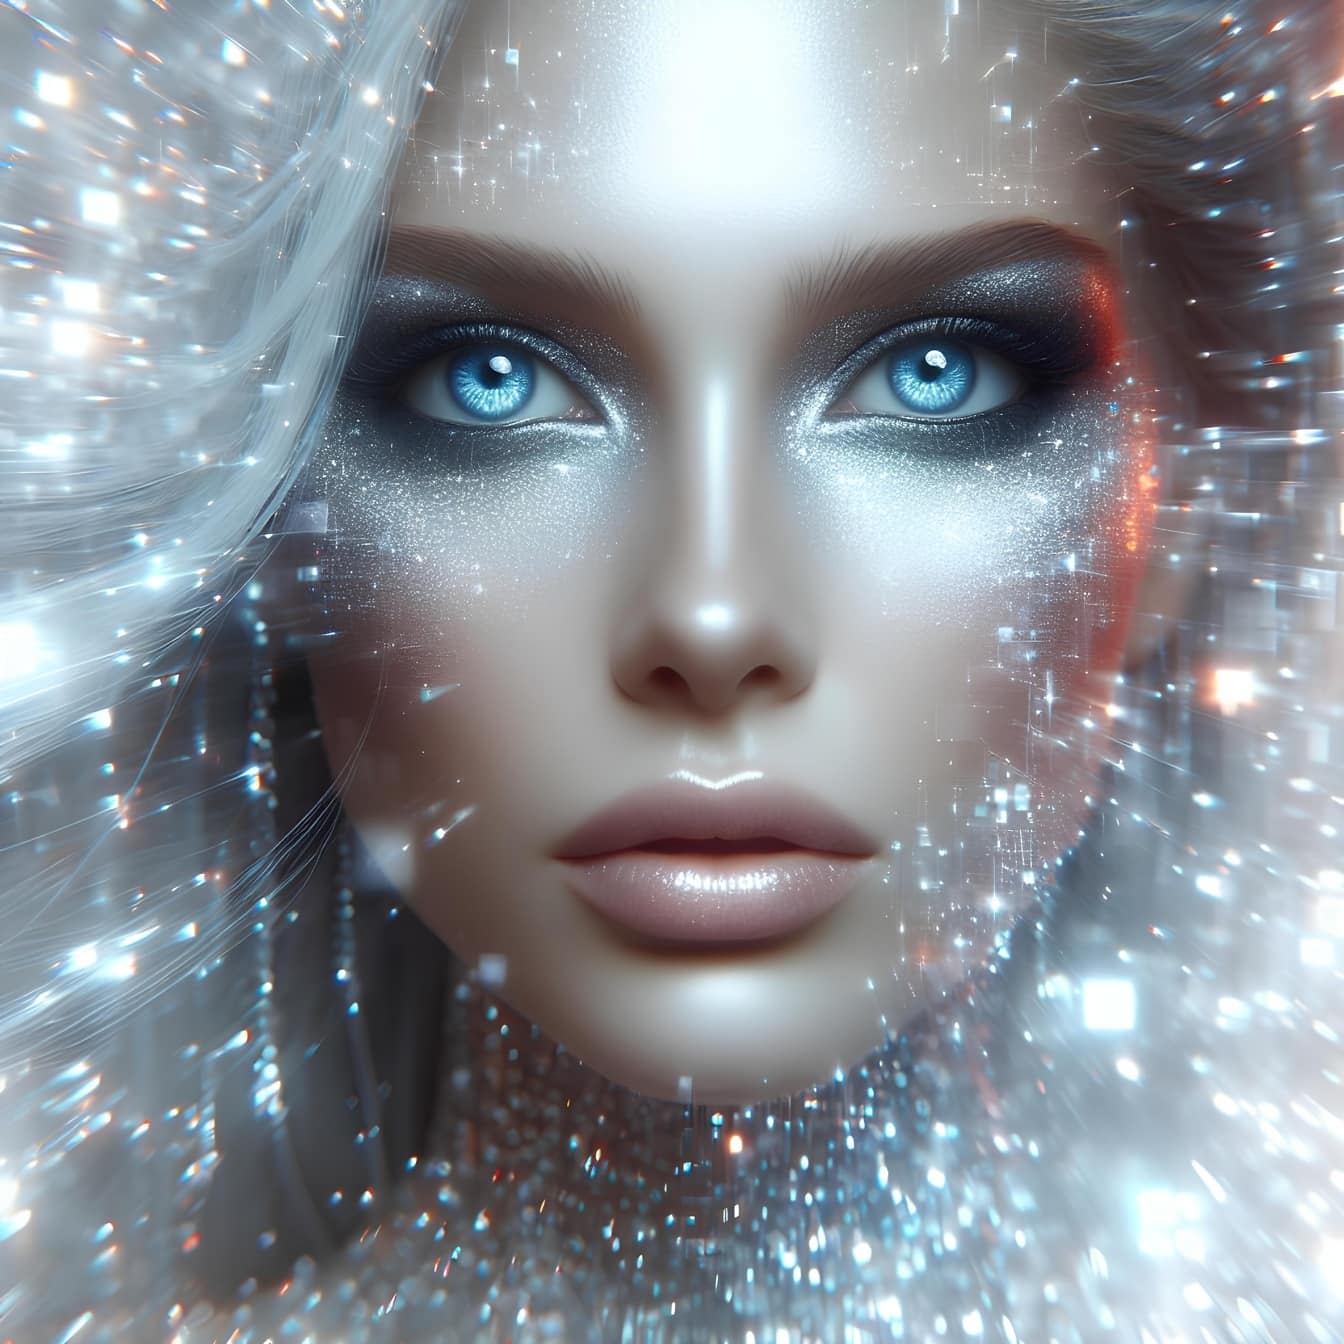 Kvinna med glitter på hennes ansikte som illustrerar den kosmiska gudomlighetens rike